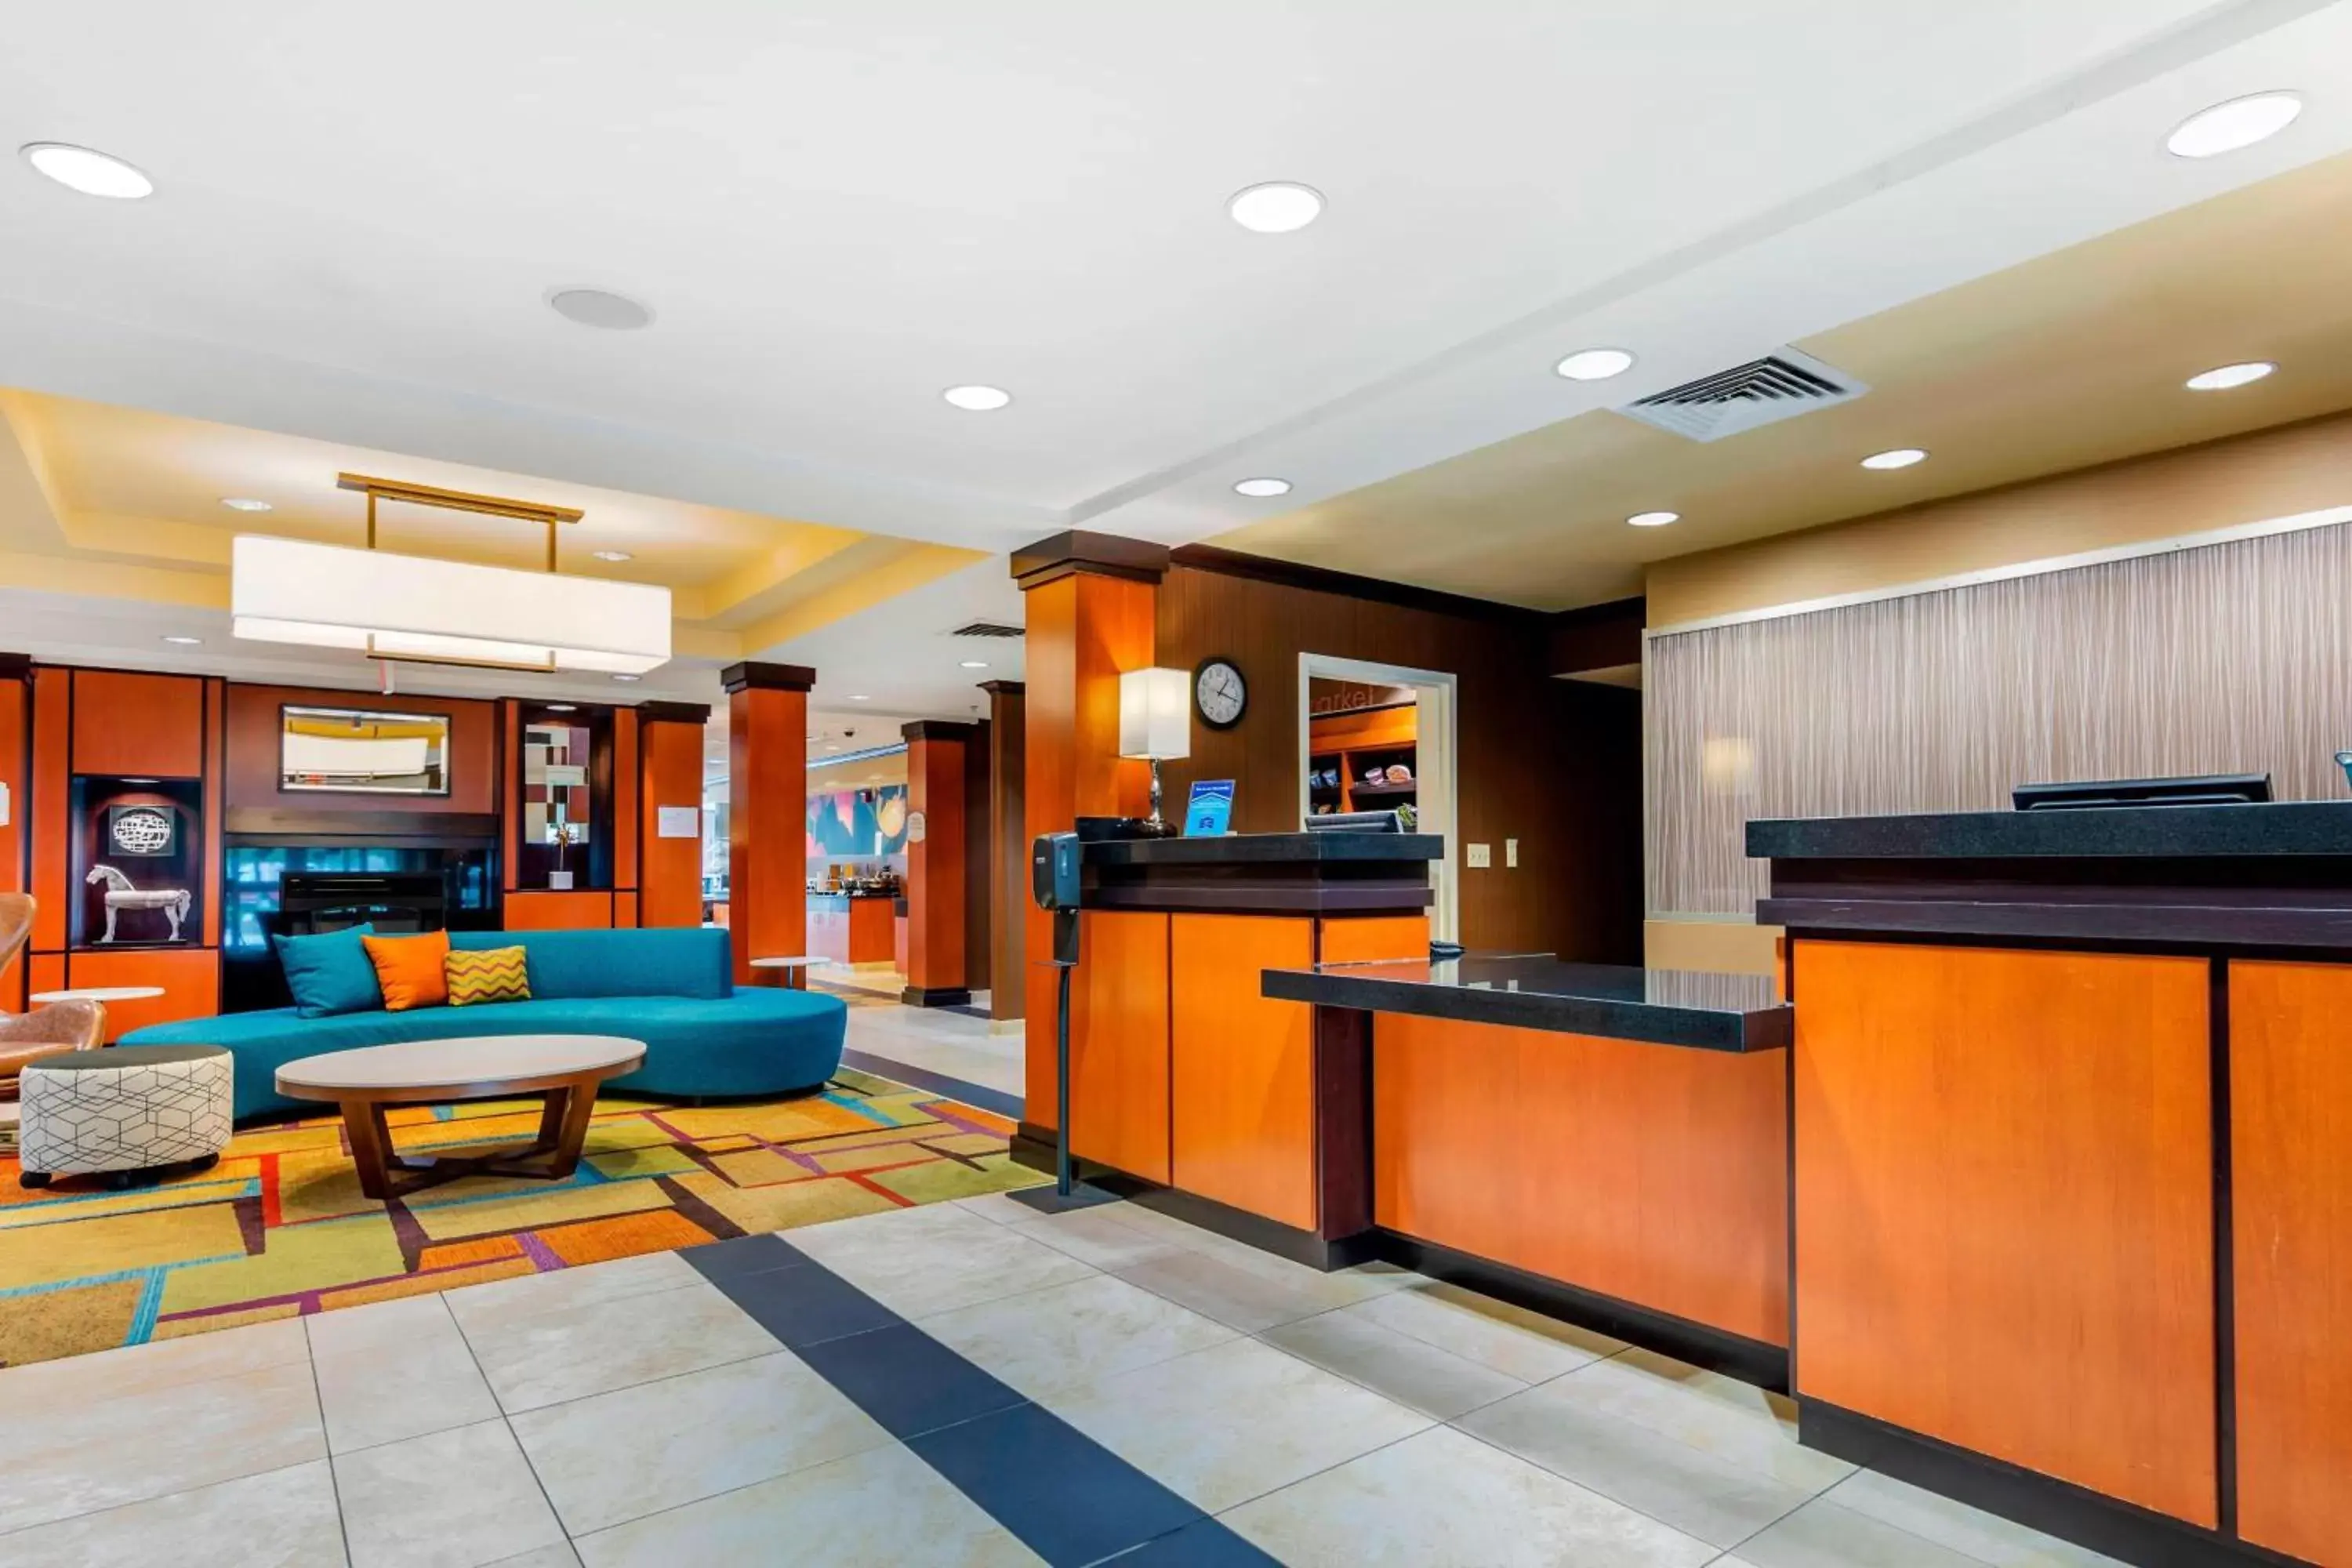 Lobby or reception, Lobby/Reception in Fairfield Inn & Suites Hooksett